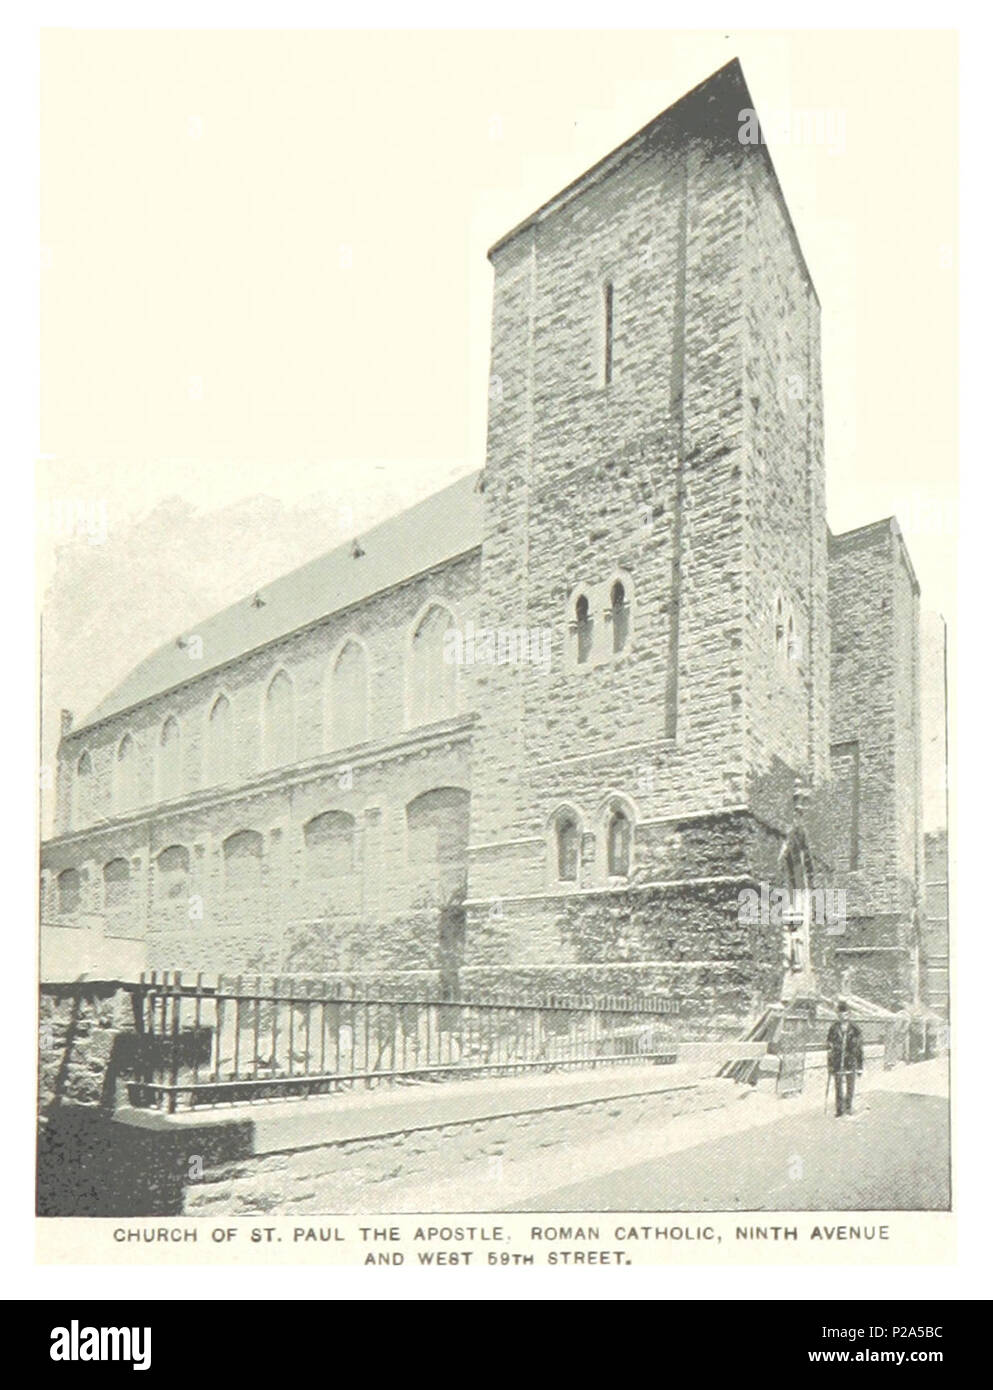 (König 1893, NYC) pg 403 KIRCHE VON ST. PAUL DER APOSTELKIRCHE, römisch-katholisch, 9 th Avenue und 59th Street. Stockfoto